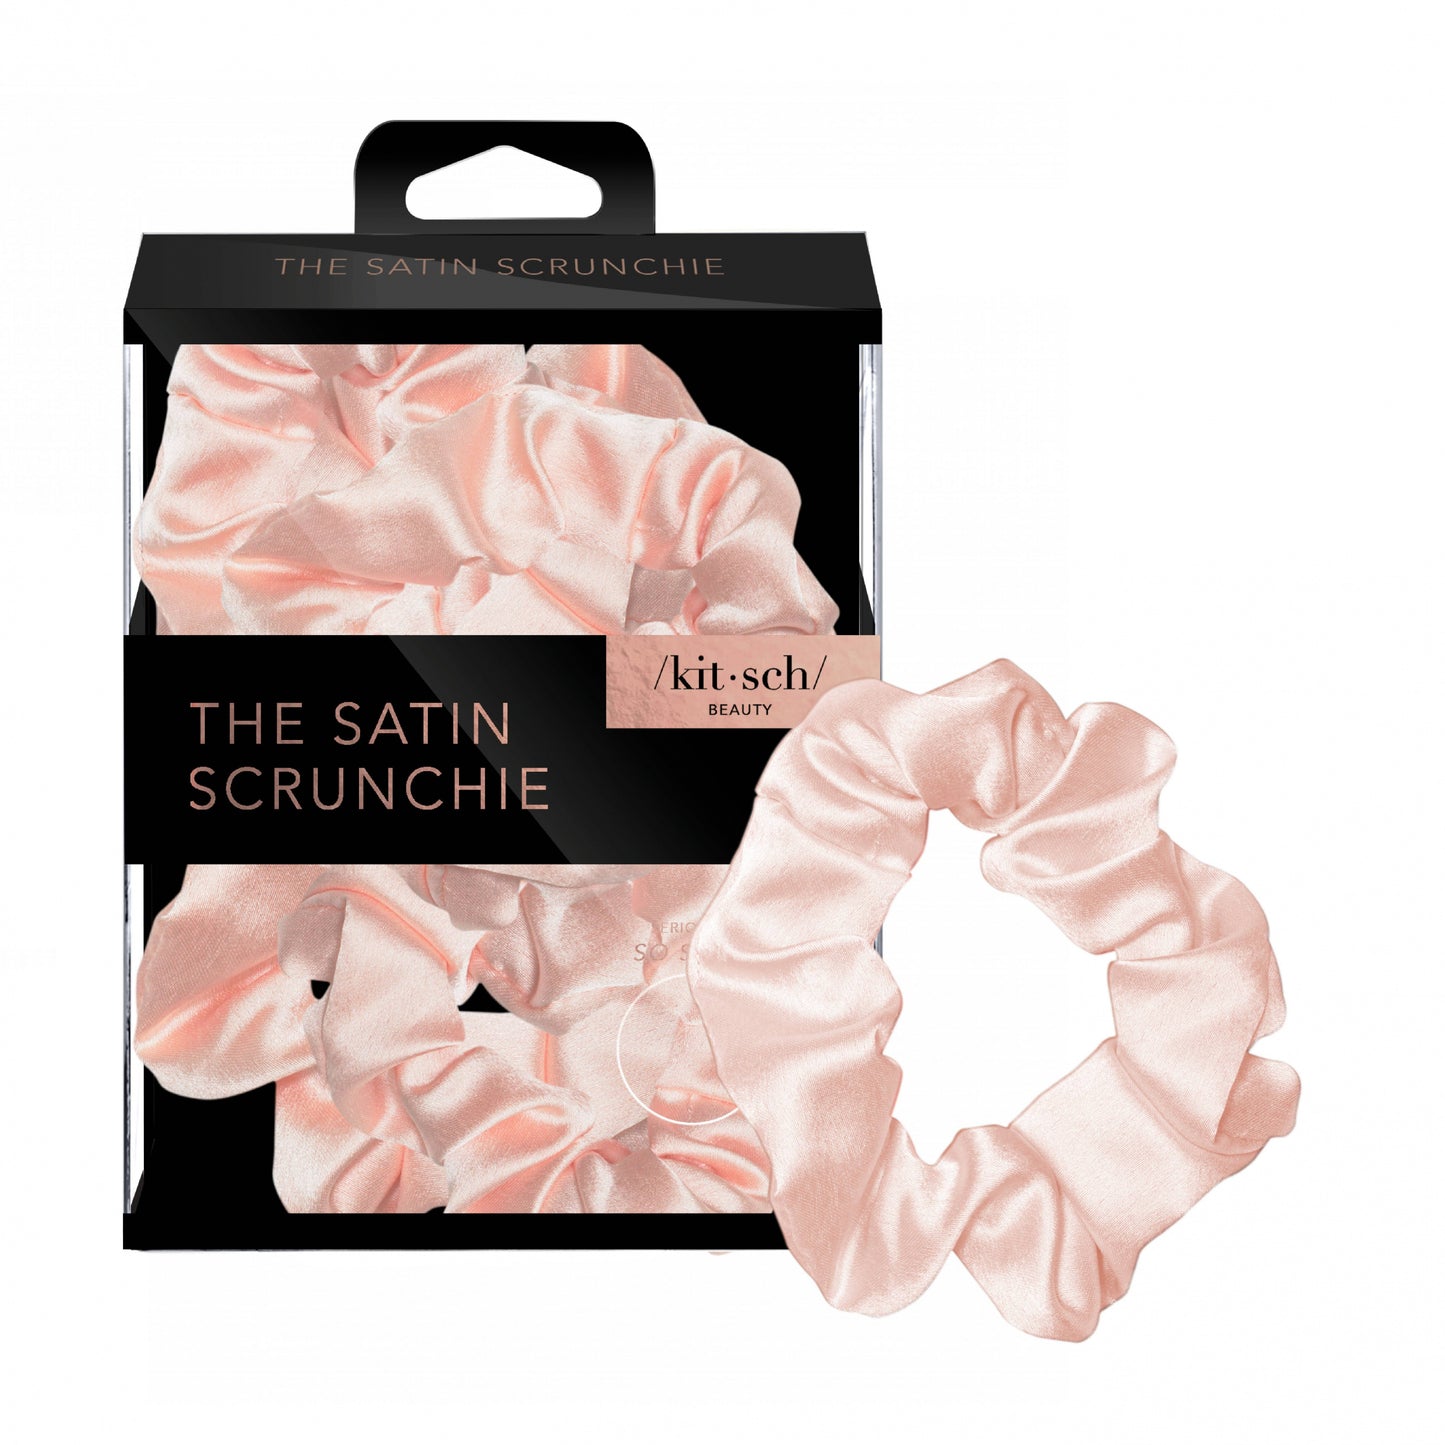 Satin Sleep Scrunchies - The Satin Scrunchie  Kitsch Blush  